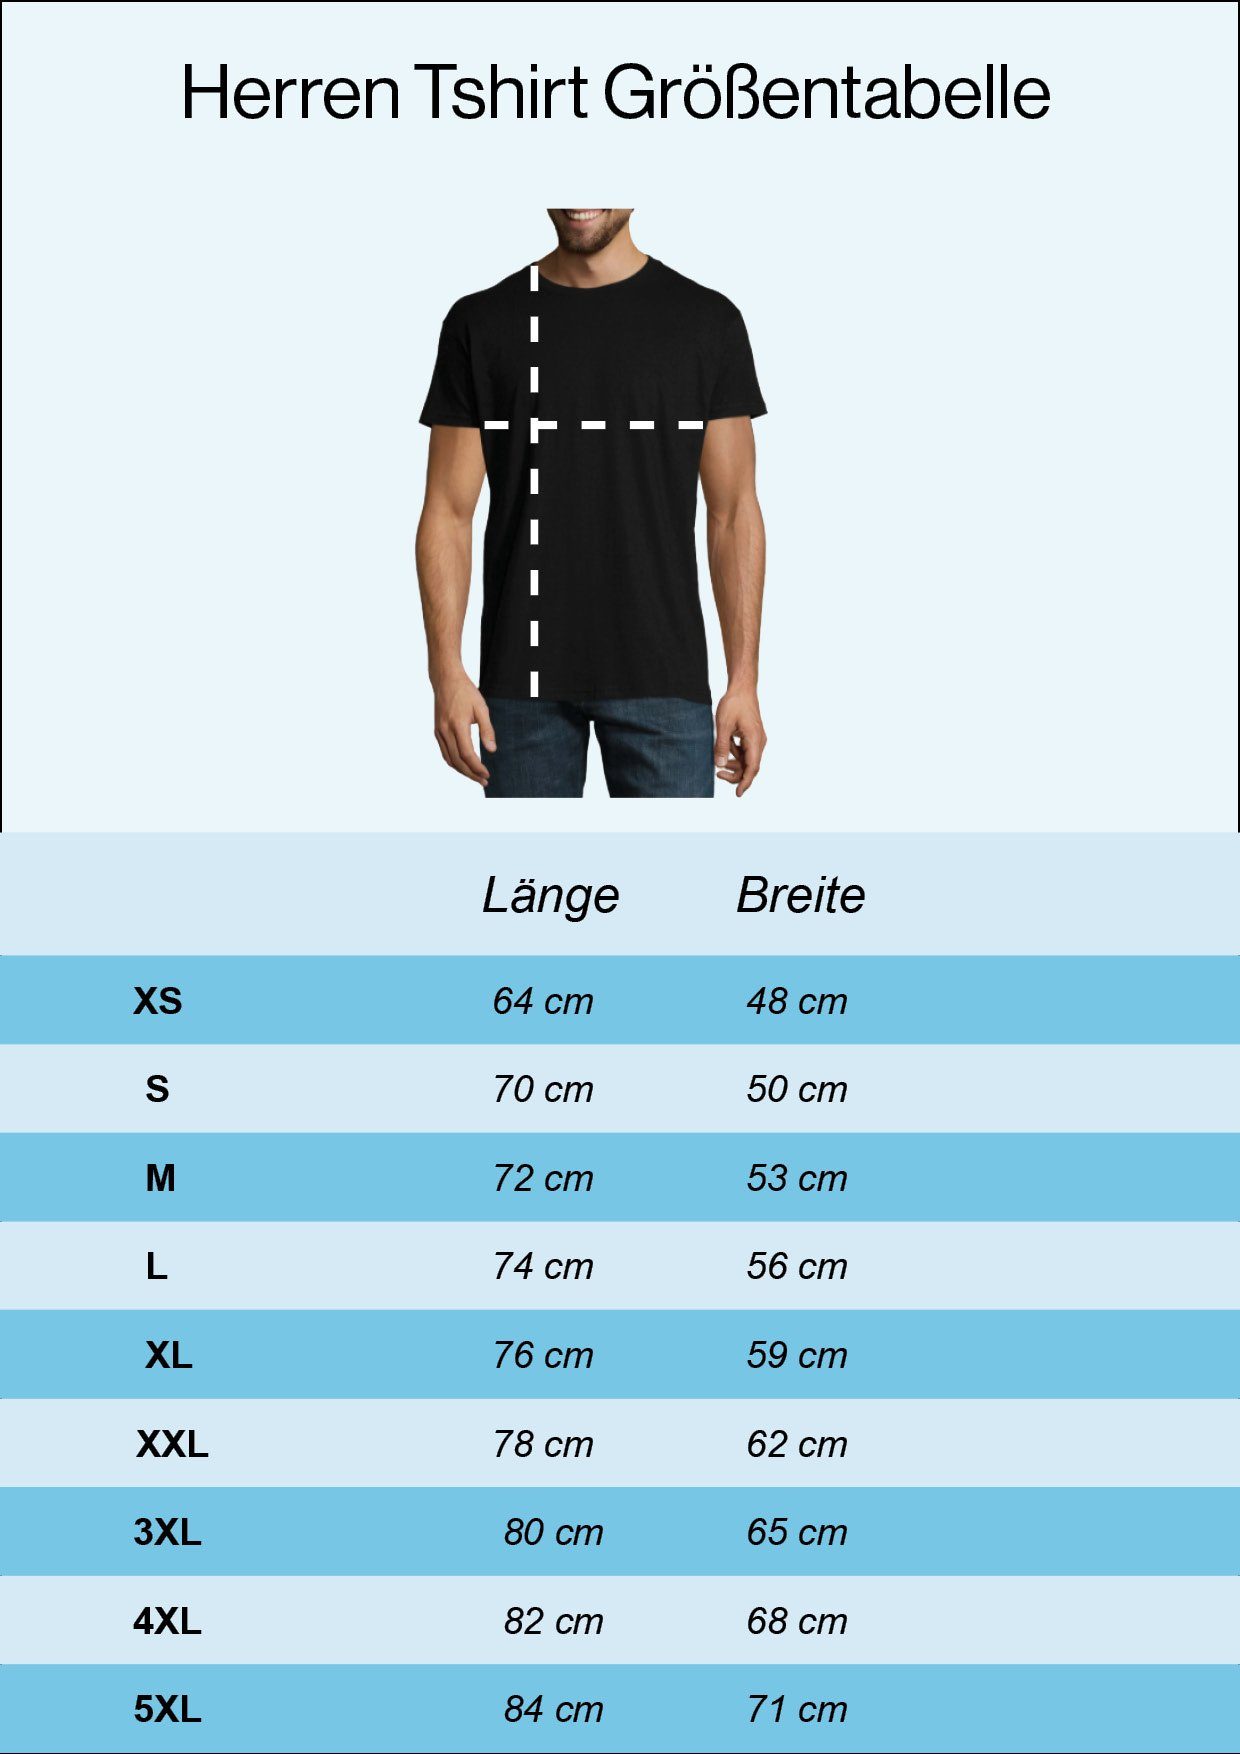 Spruch der T-Shirt Welt" Print mit Papa Youth Designz Herren "Bester Burgund T-Shirt